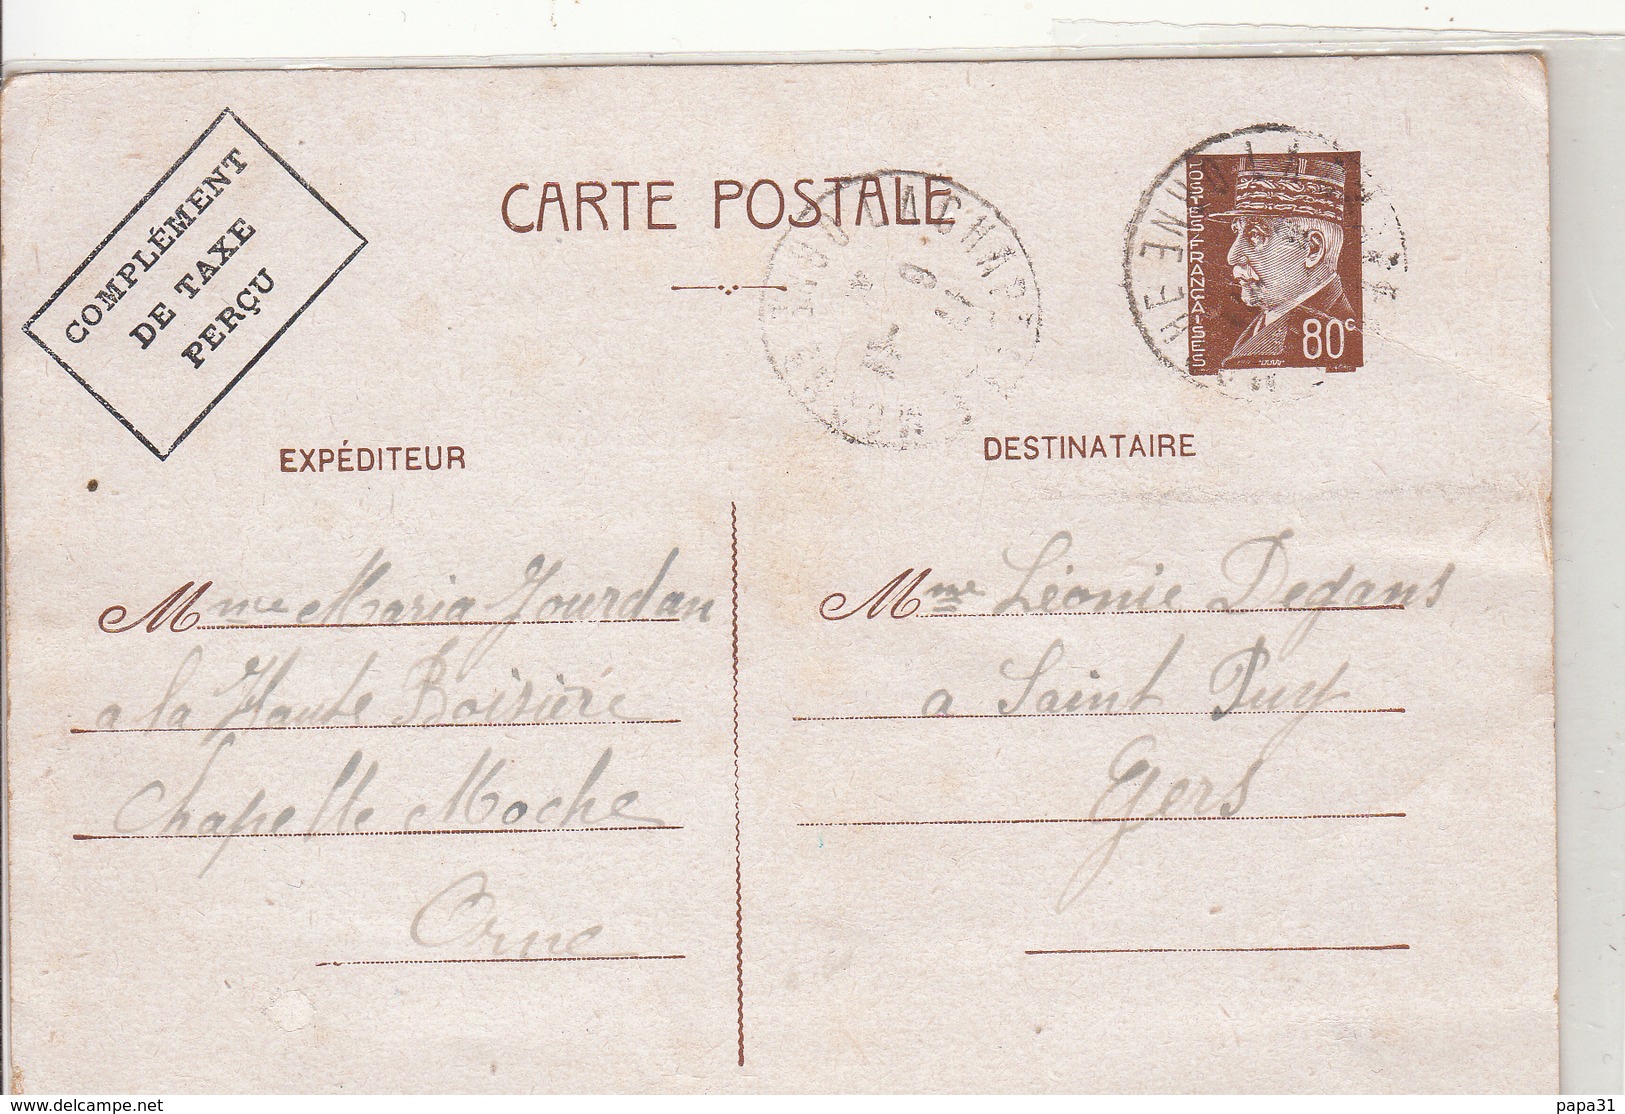 Entier Postal Carte Maréchal Pétain 0.80 - 1942 - 2. Weltkrieg 1939-1945